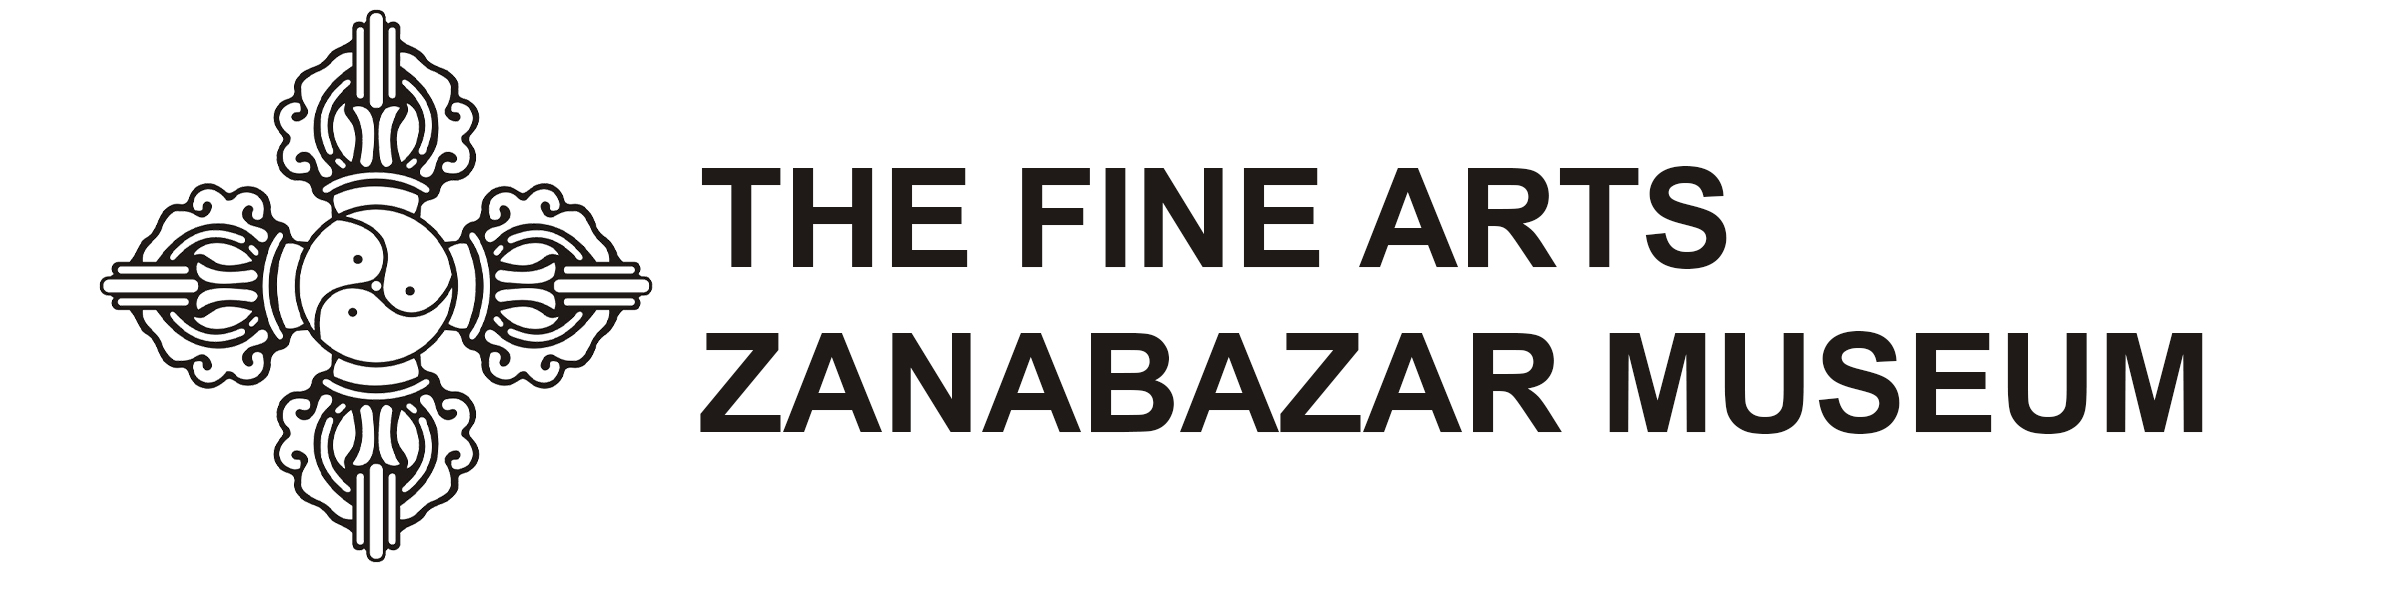 New Site: The Fine Arts Zanabazar Museum